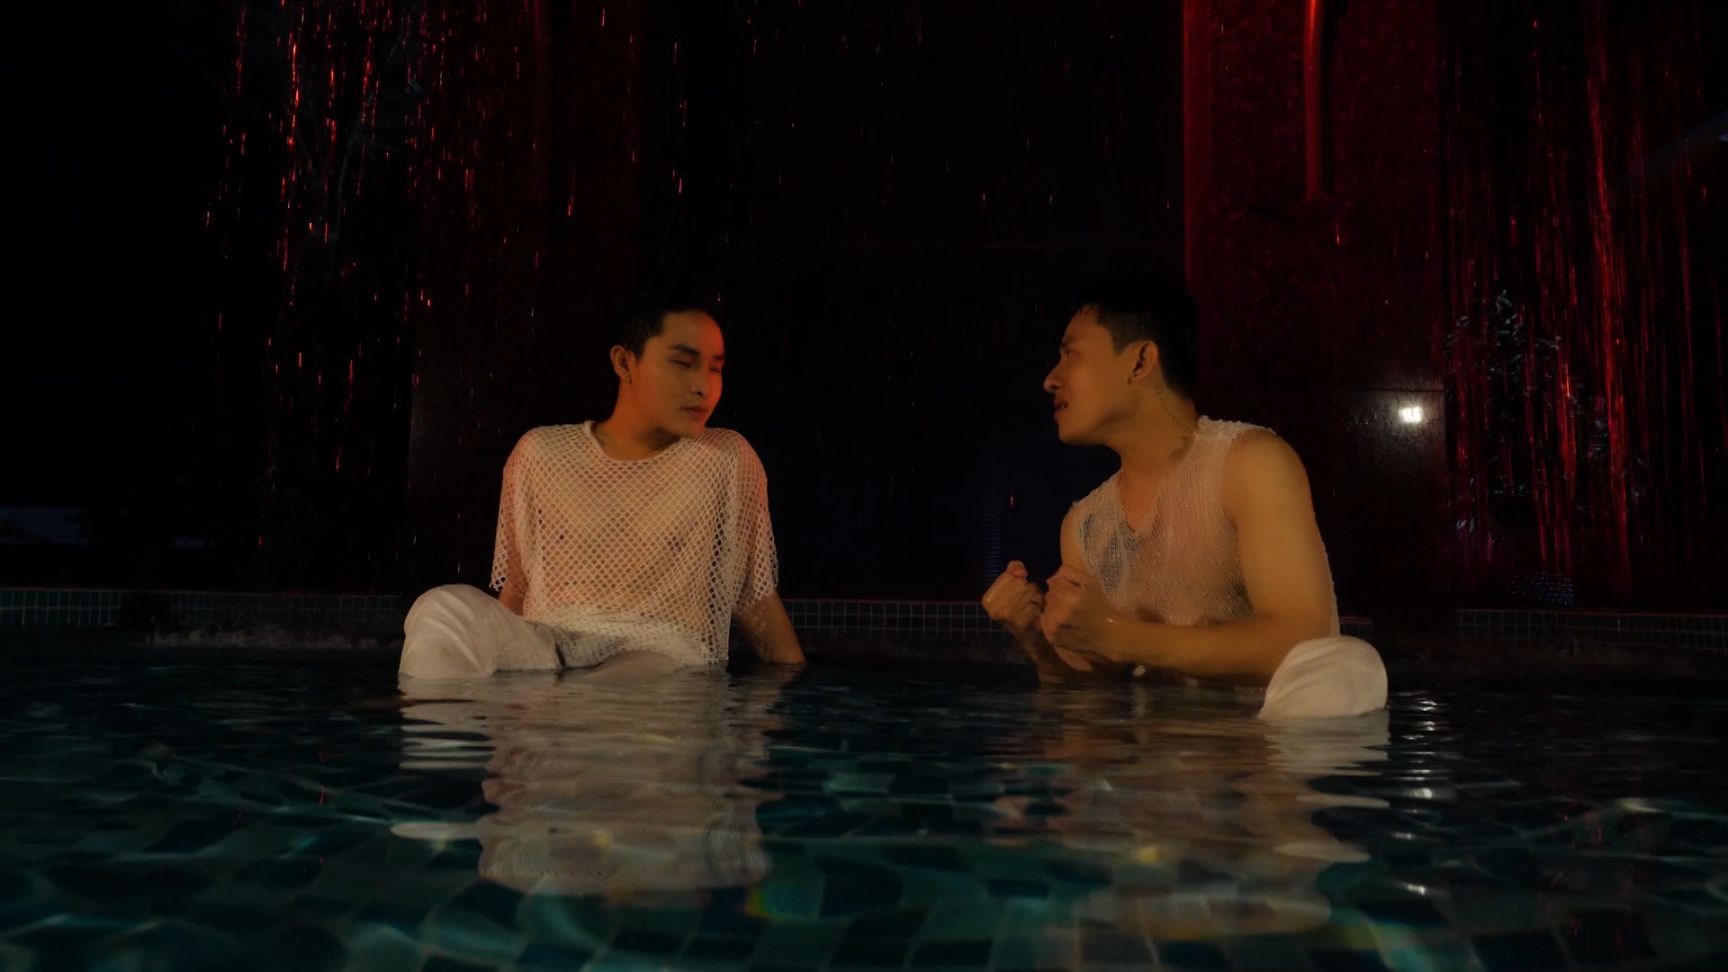 MV DONG THOI GIAN 3 Trương Trần Anh Duy, Henry Ngọc Thạch gây sốt với hình ảnh đam mỹ trong MV mới